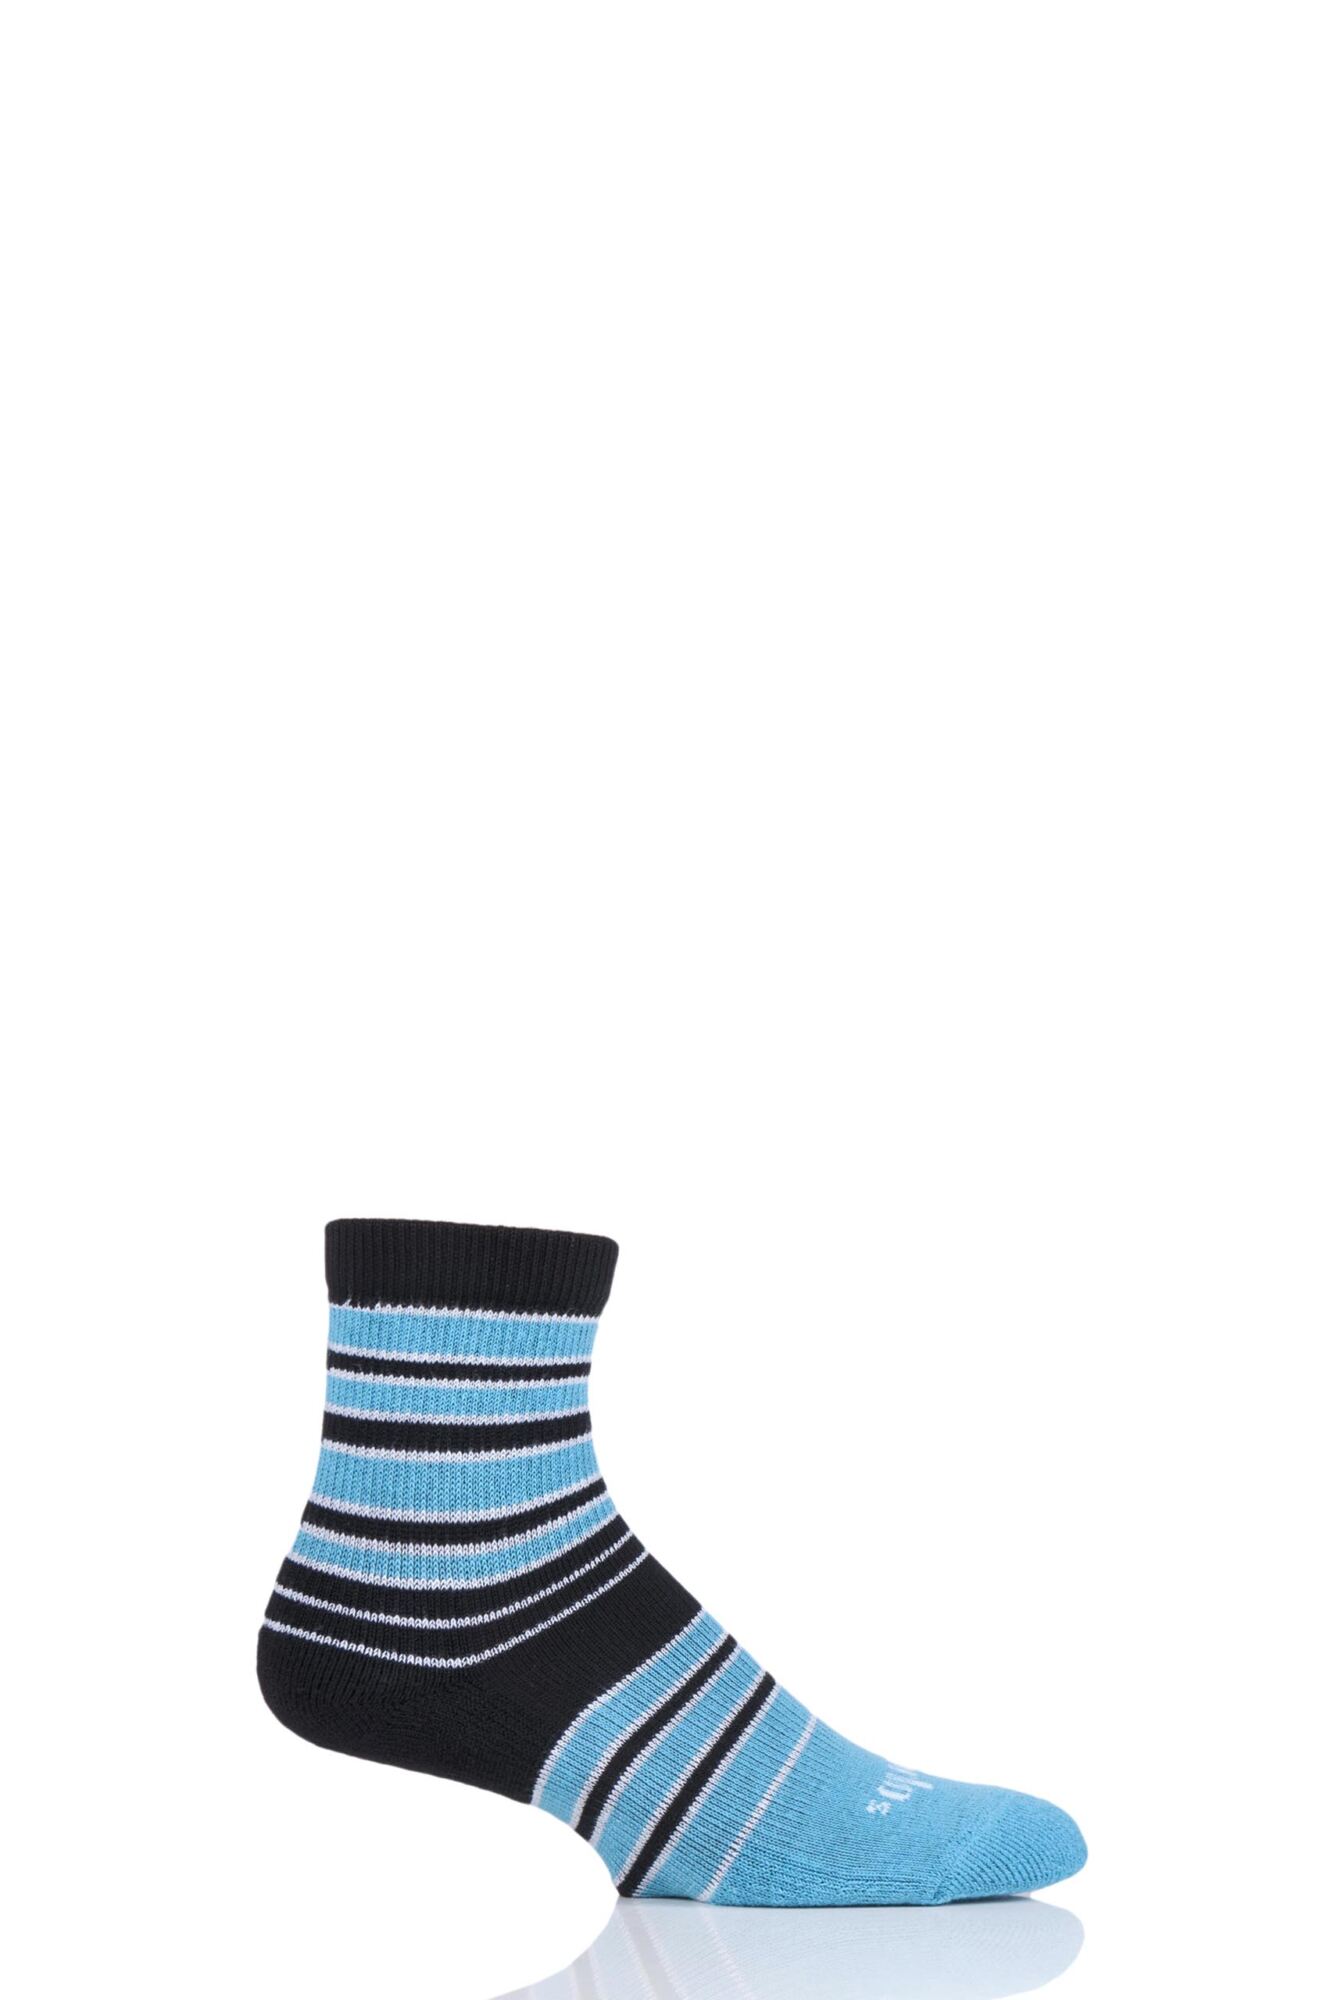 1 Pair Striped Quarter Socks Unisex - Thorlos